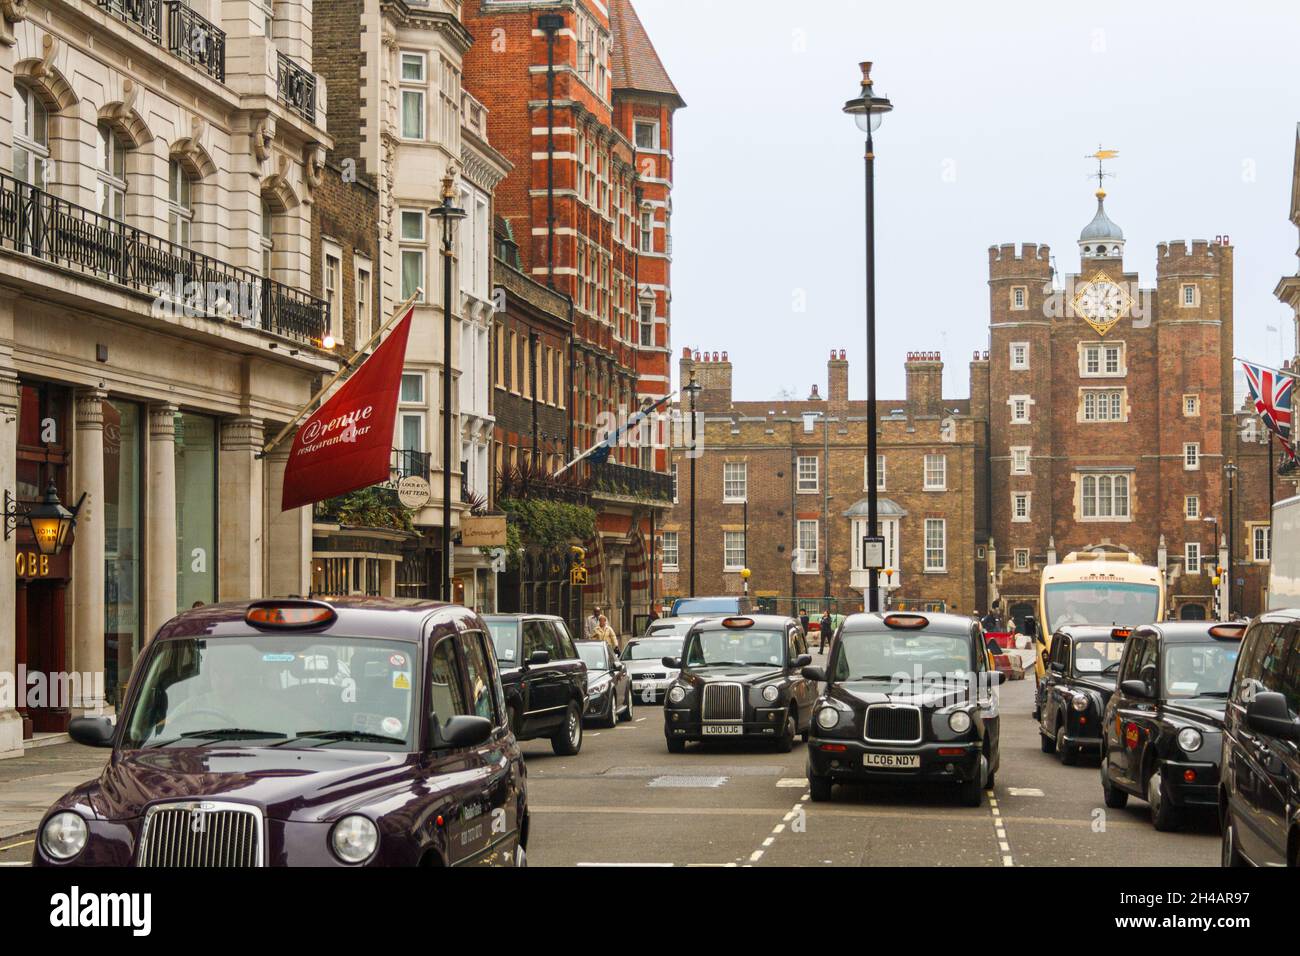 Londra, Regno Unito; 15 marzo 2011: Taxi su Saint James Street, con il palazzo dello stesso nome sullo sfondo. Foto Stock